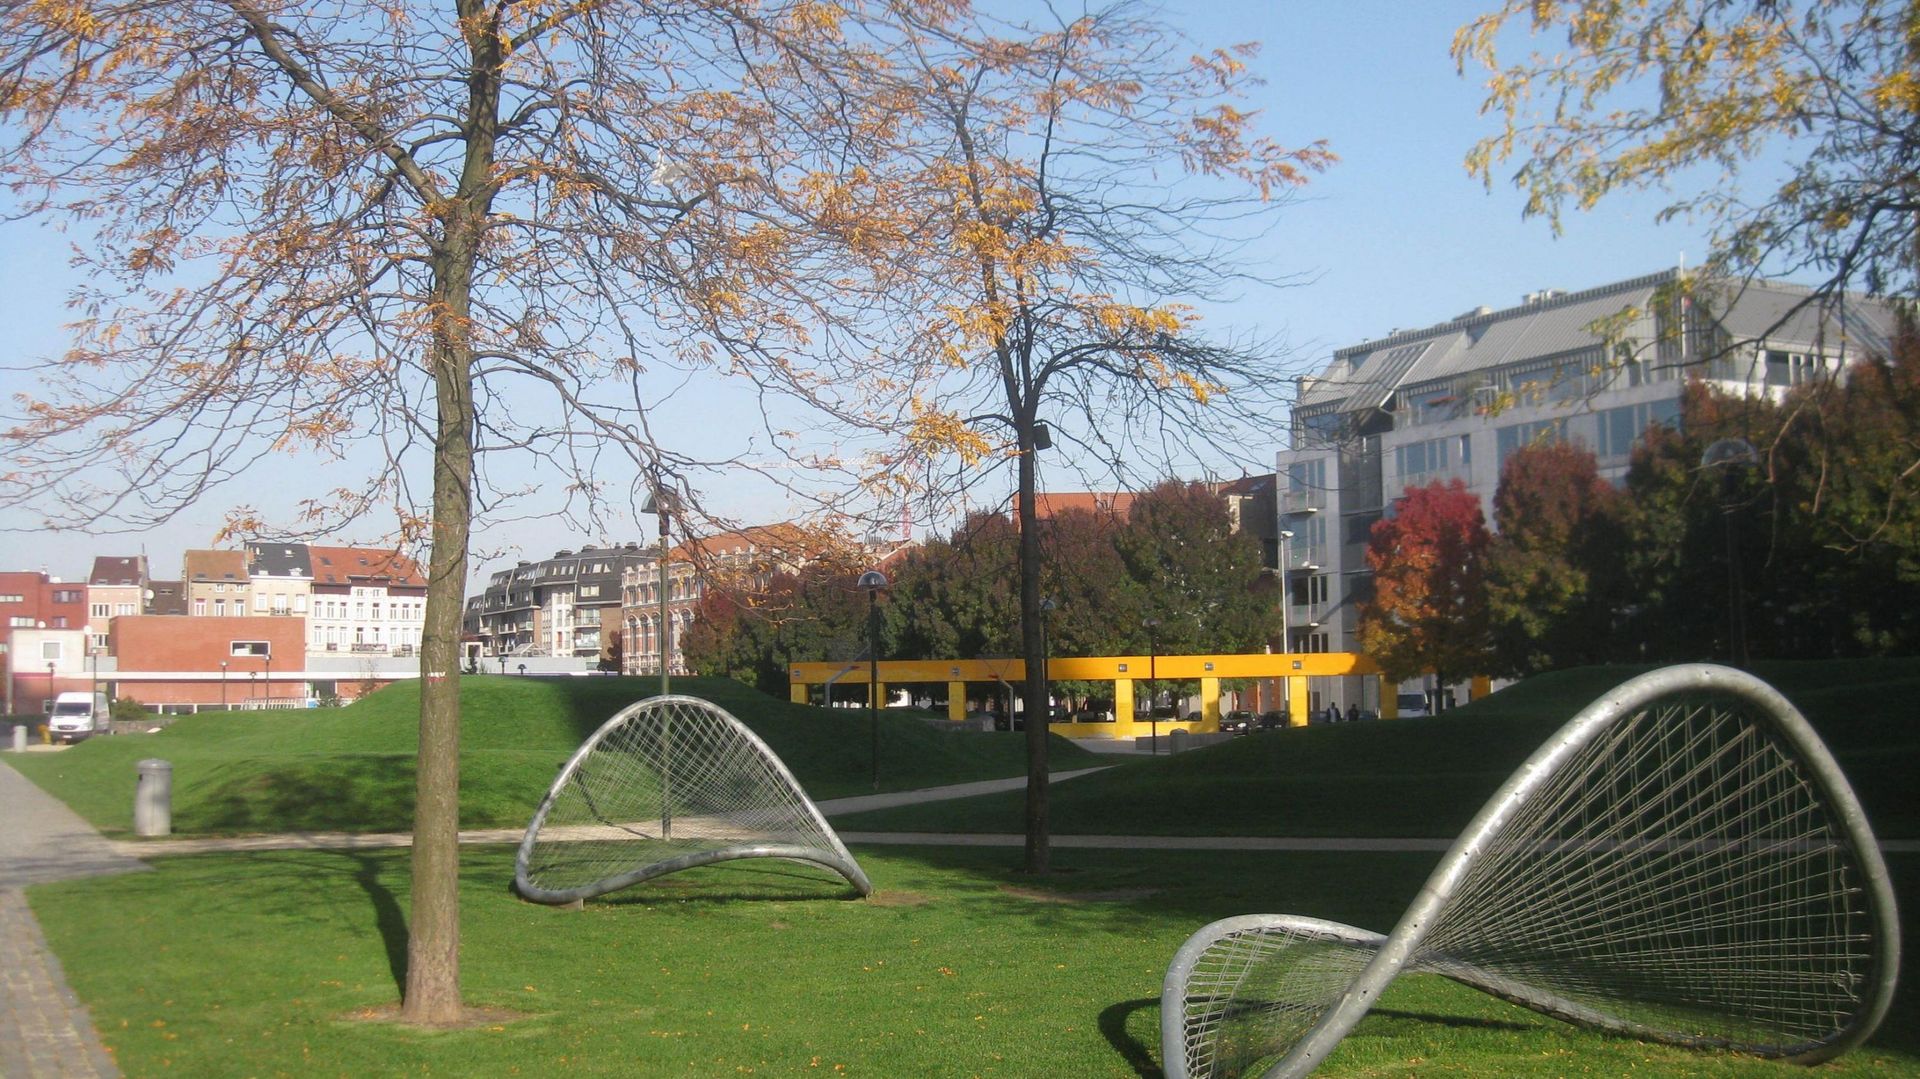 Au parc Gaucheret, à Bruxelles, ces cerceaux métalliques, rebaptisés "chips", n'ont pas de fonction définie, ils ouvrent le champ des possibles en termes d'activités ludiques.